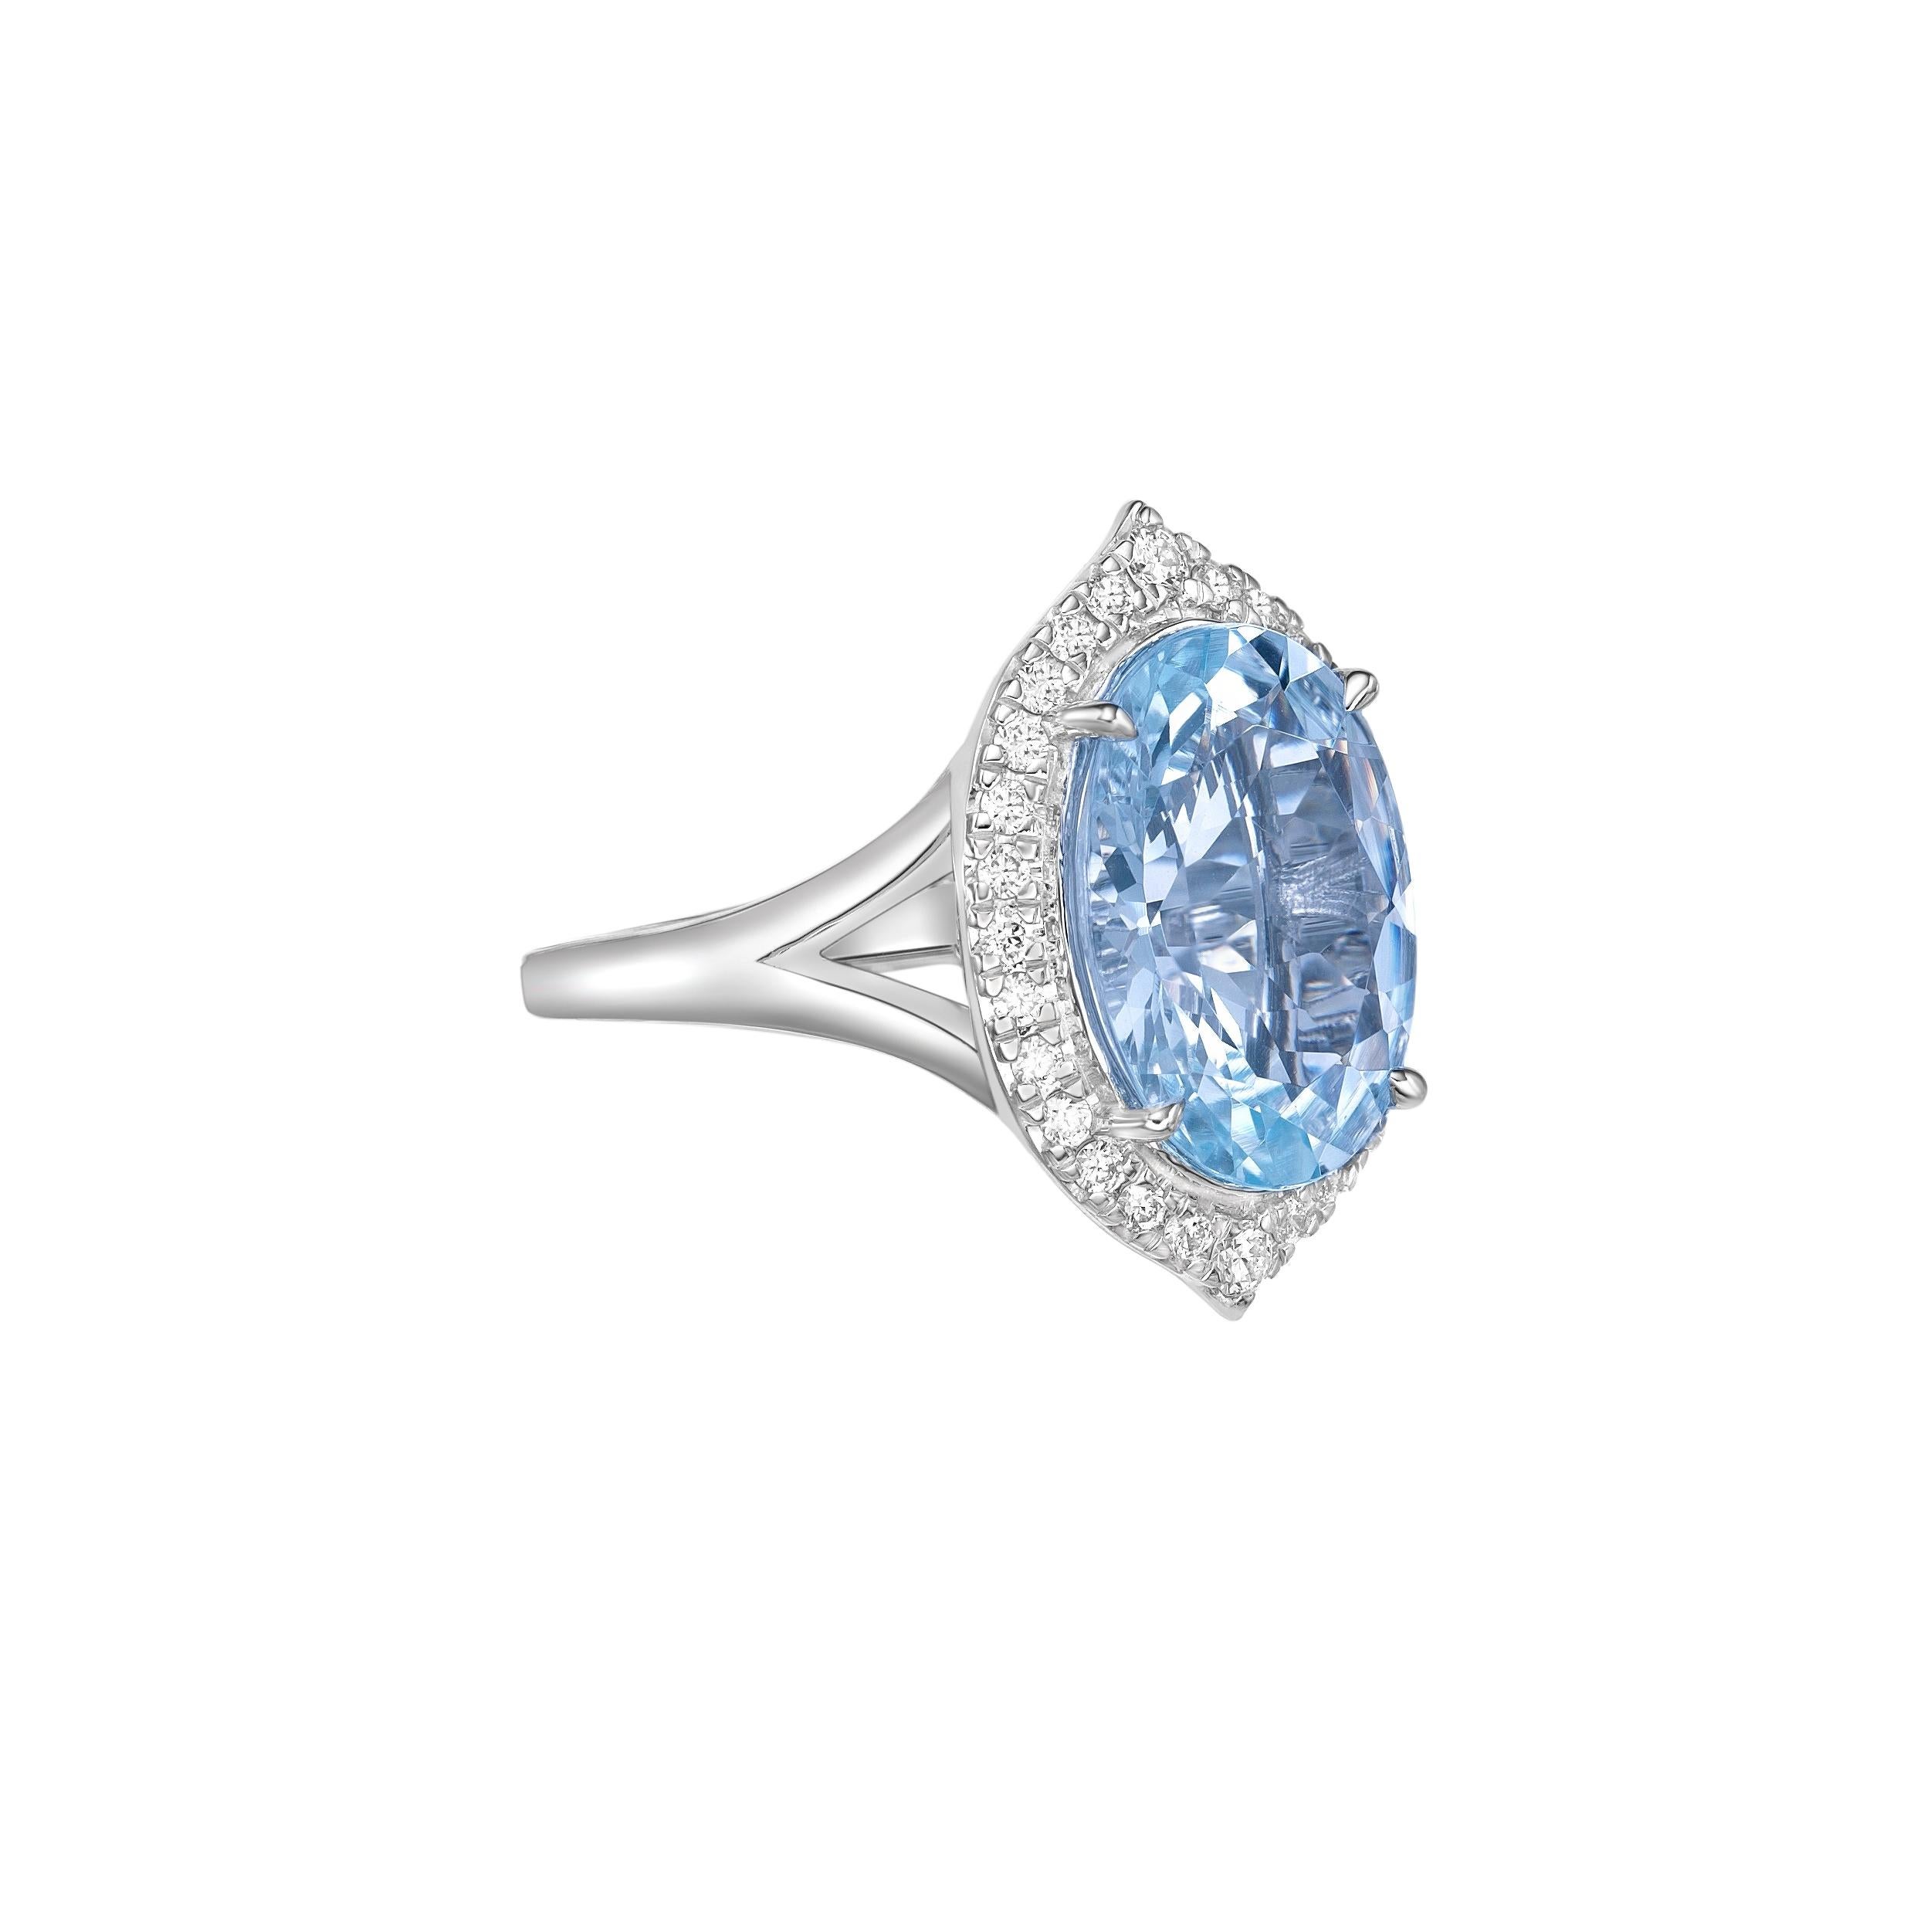 Diese Kollektion bietet eine Reihe von Aquamarinen mit einem eisblauen Farbton, der so cool ist, wie er nur sein kann! Der mit Diamanten besetzte Ring ist aus Weißgold gefertigt und präsentiert sich klassisch und elegant.

Aquamarin Fancy Ring in 18